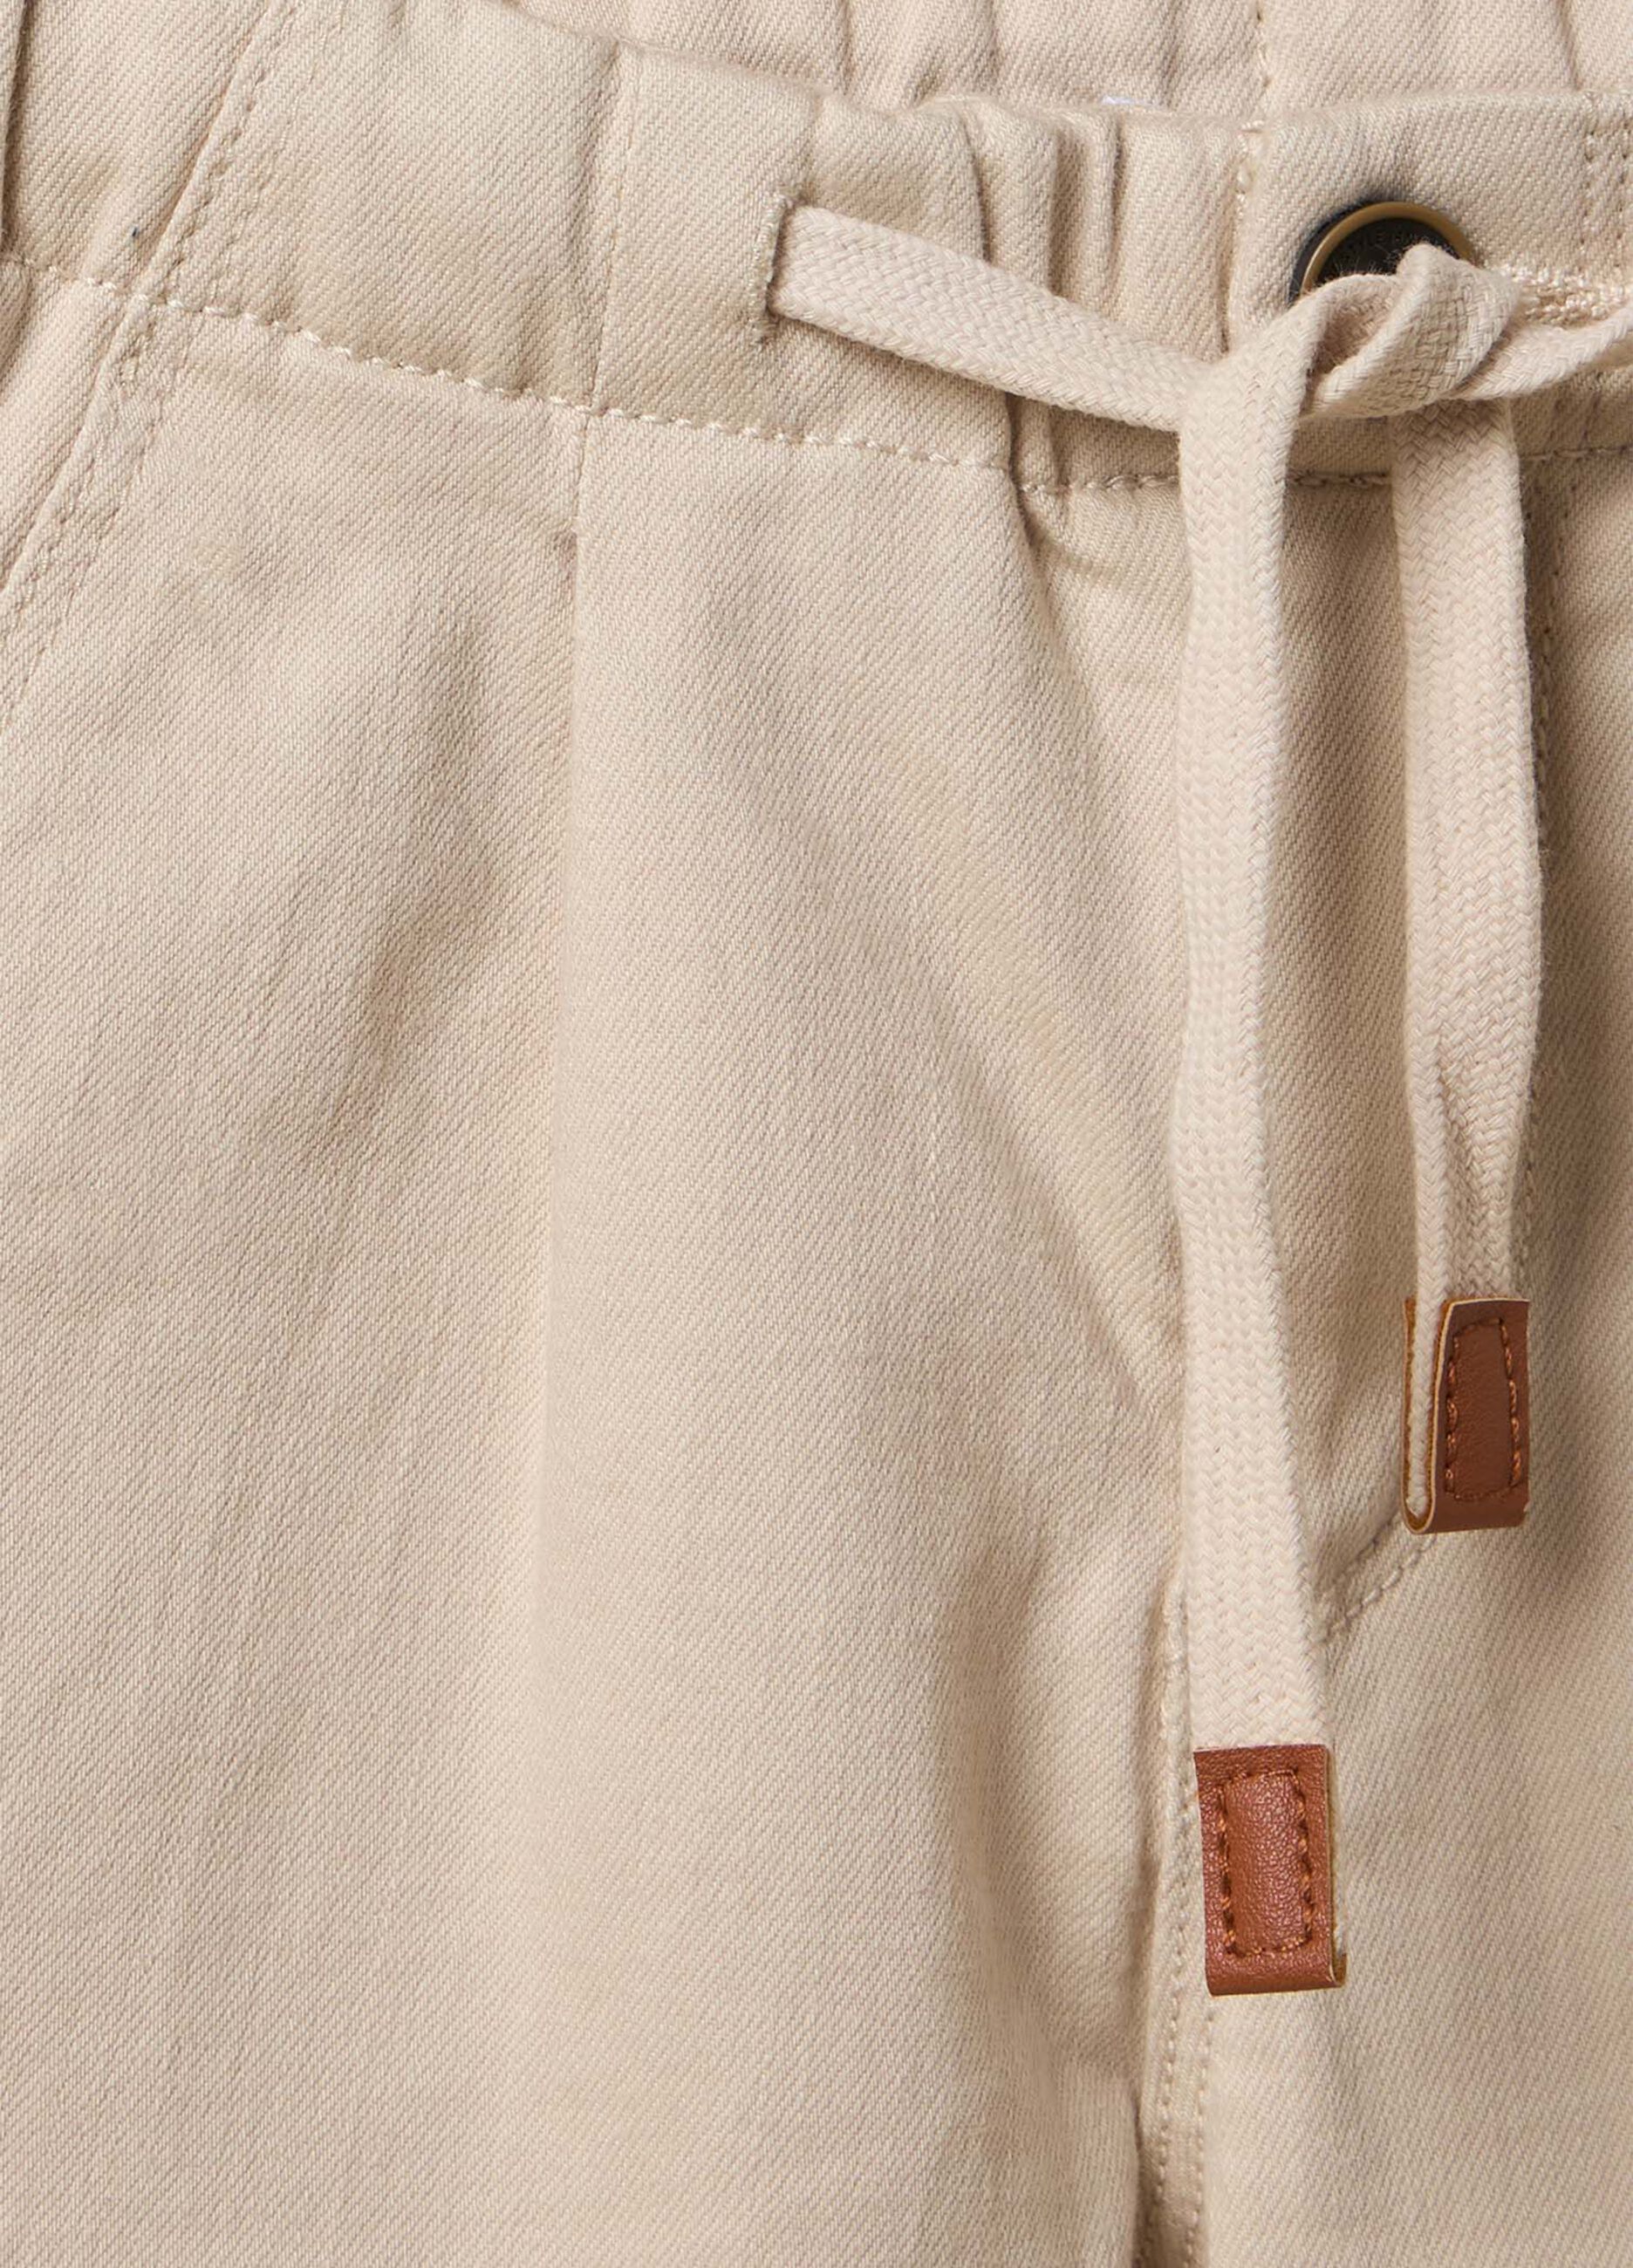 Pantaloni IANA in cotone misto lyocell bambino